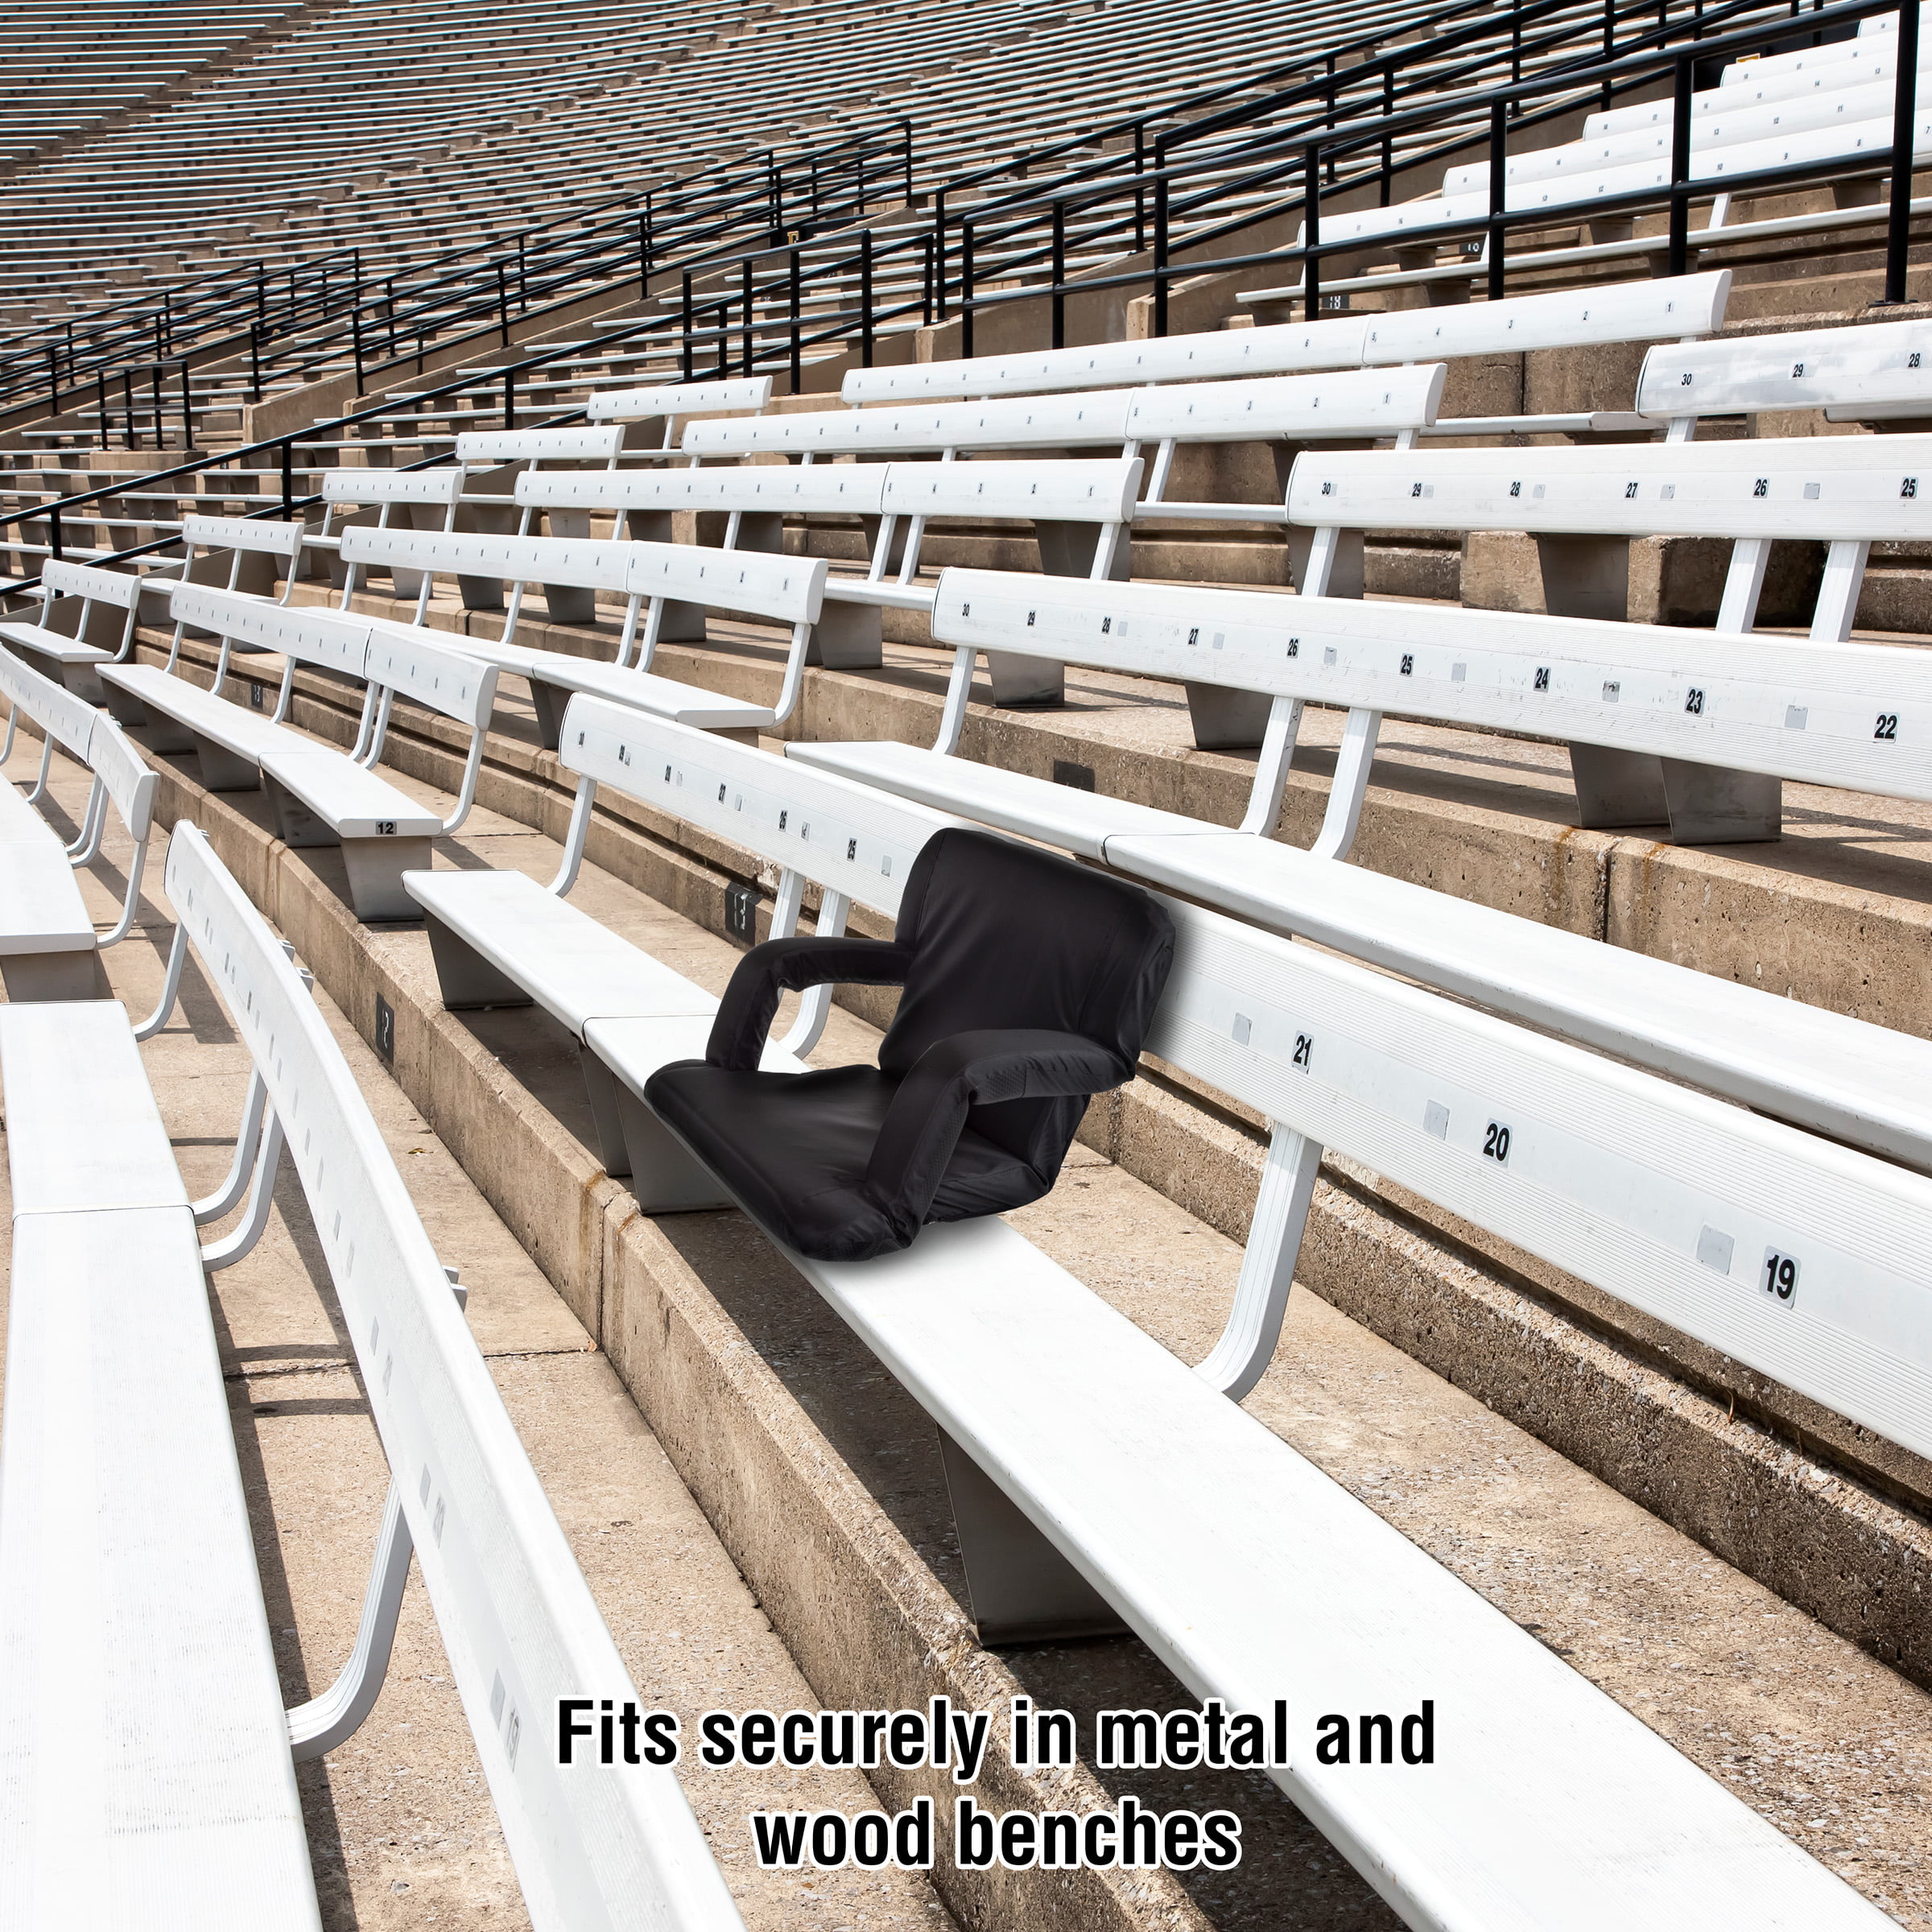 Daviontae Folding Stadium Seat with Cushion Arlmont & Co.